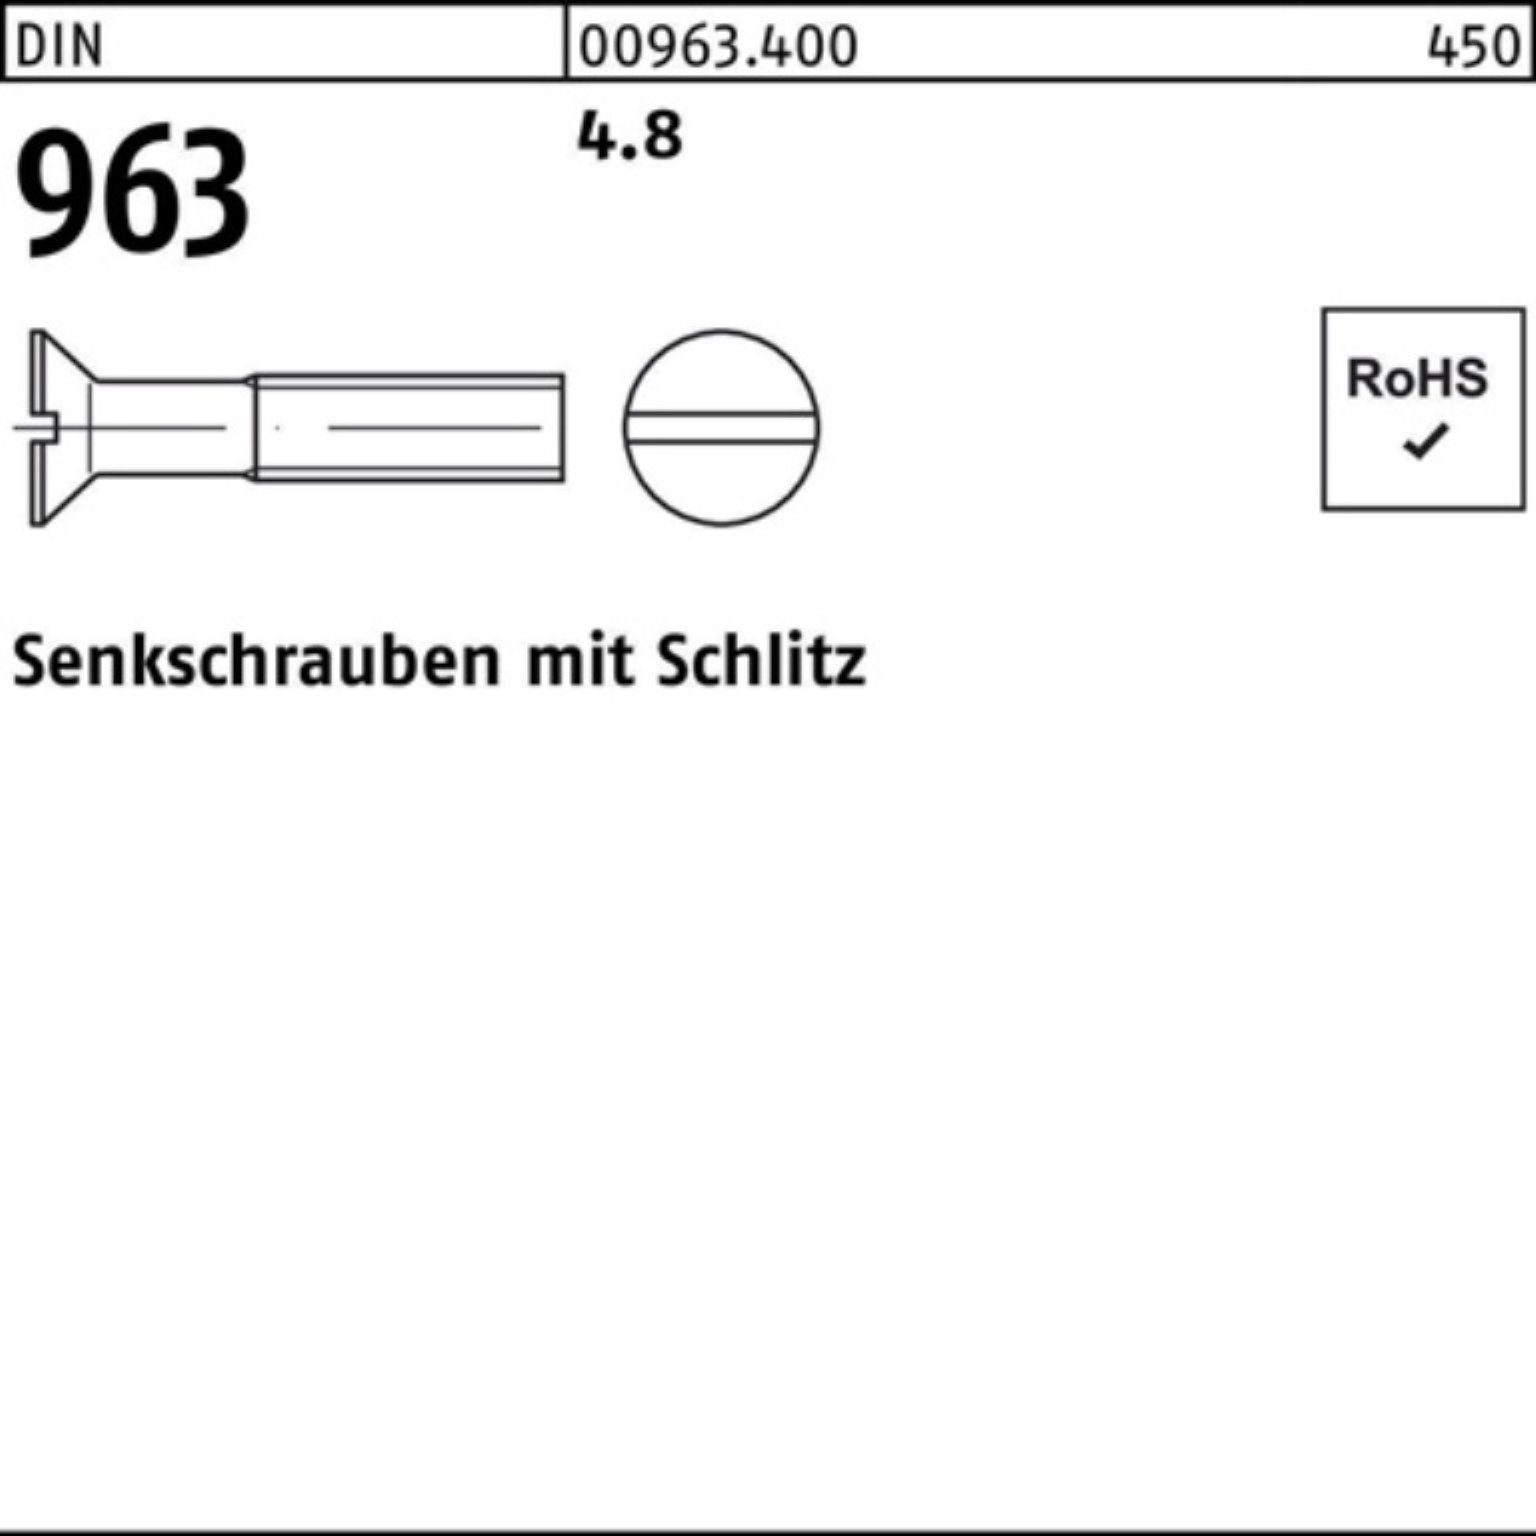 Reyher Senkschraube 1000er Senkschraube Schlitz 1000 M6x DIN 96 963 Stück 4.8 10 Pack DIN